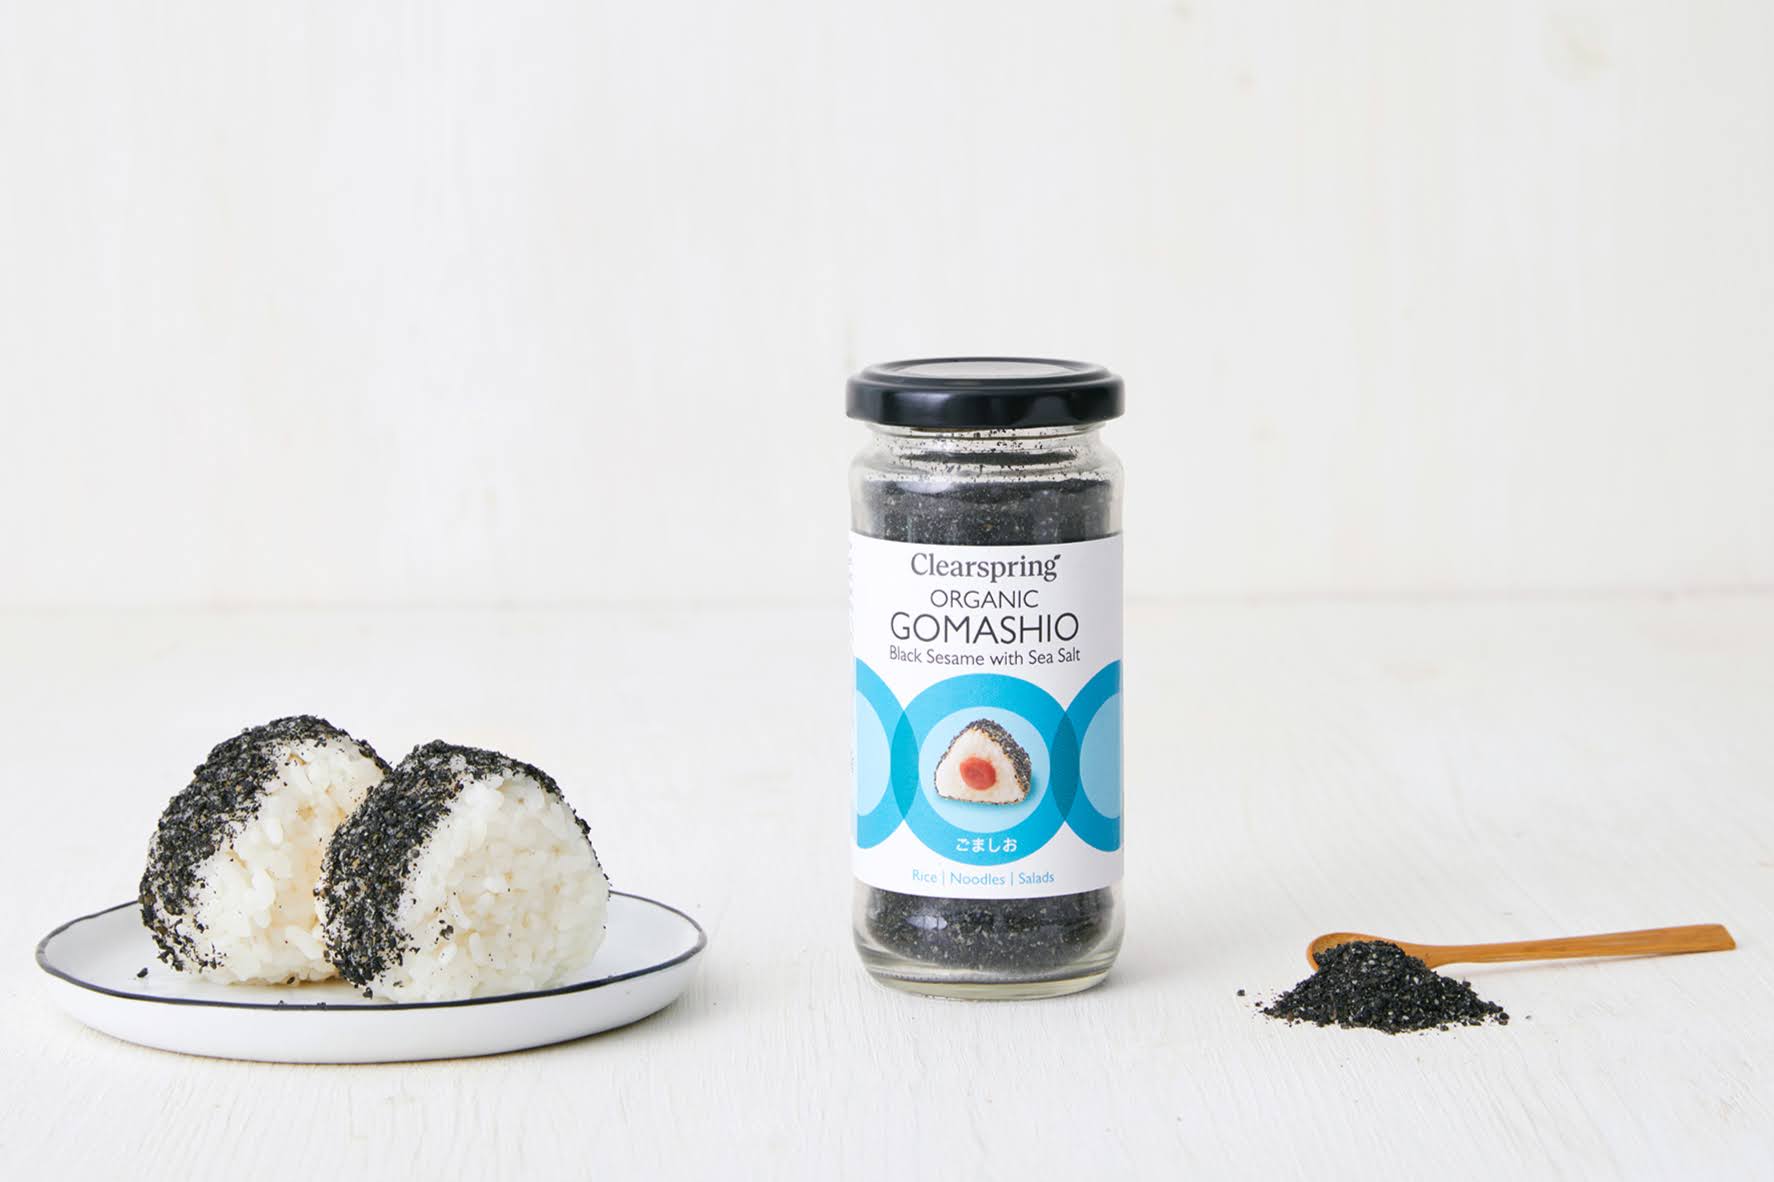 Gomasio aus schwarzem Sesam & Meersalz (Gomashio)